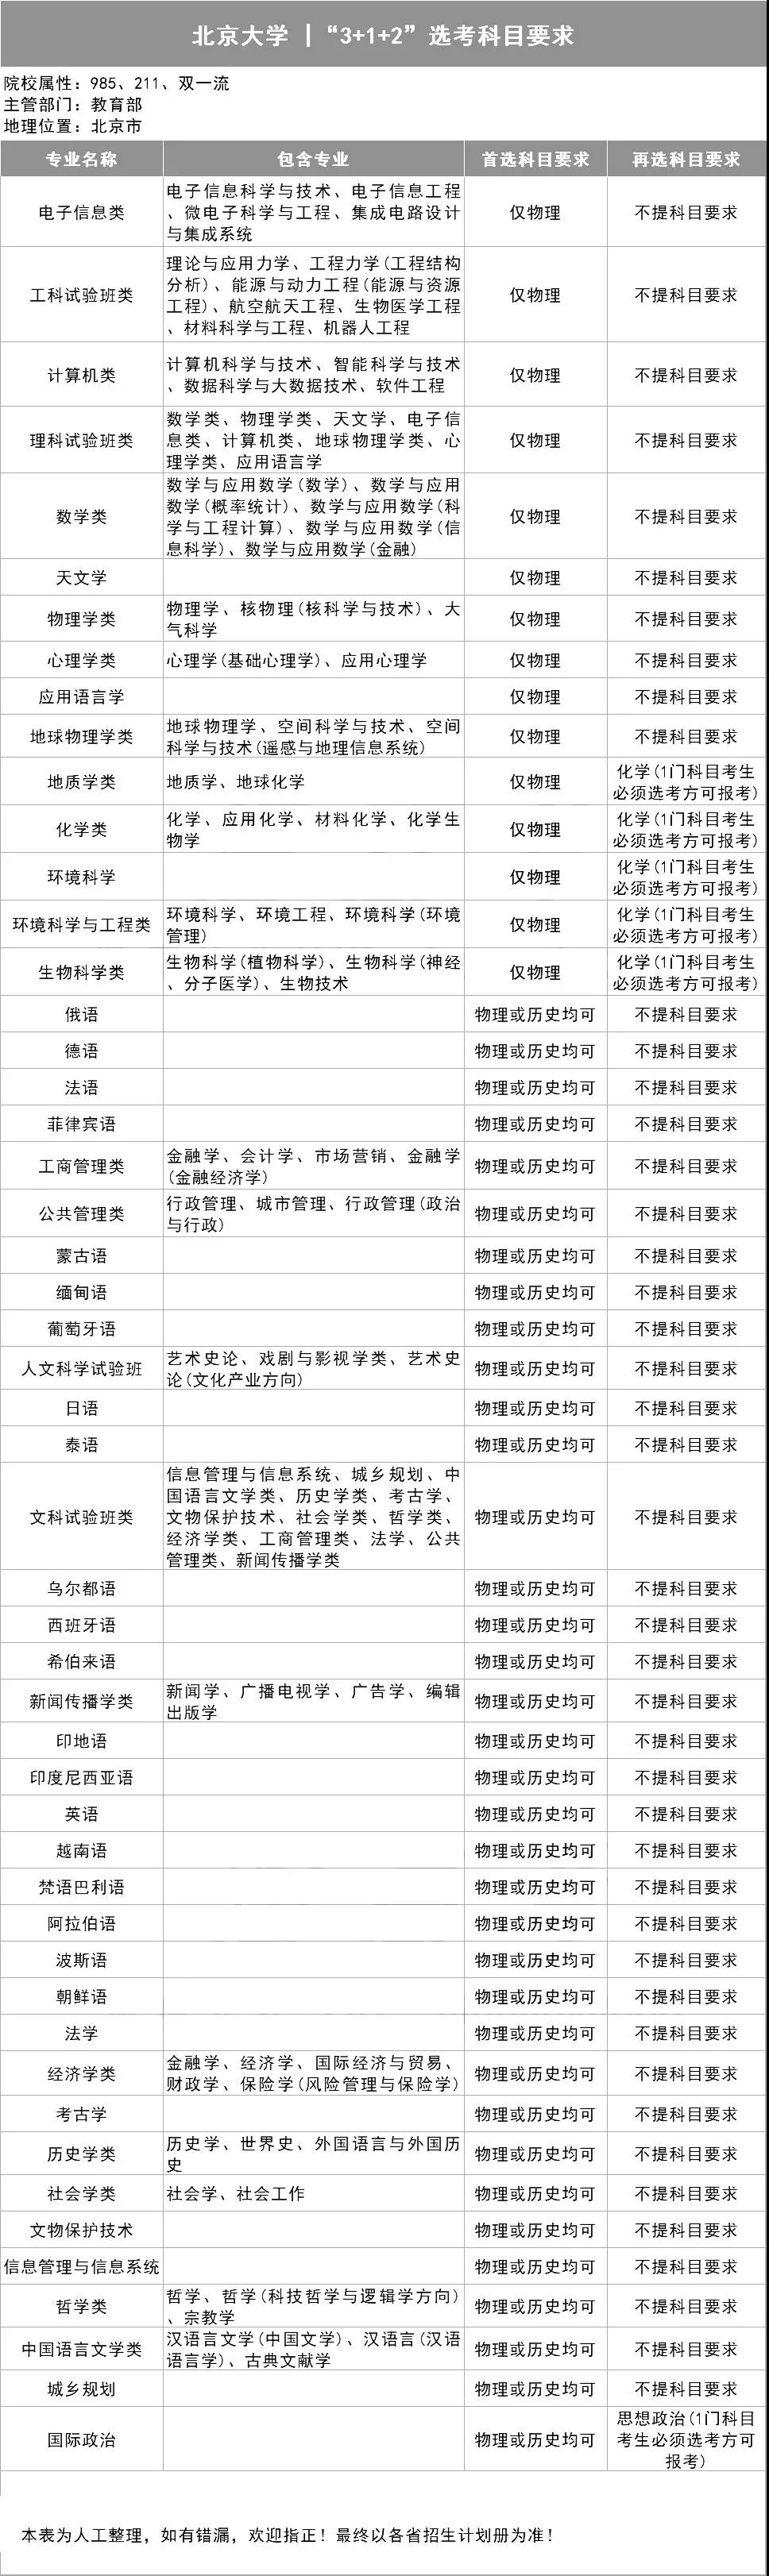 北京大学3+1+2选考科目要求